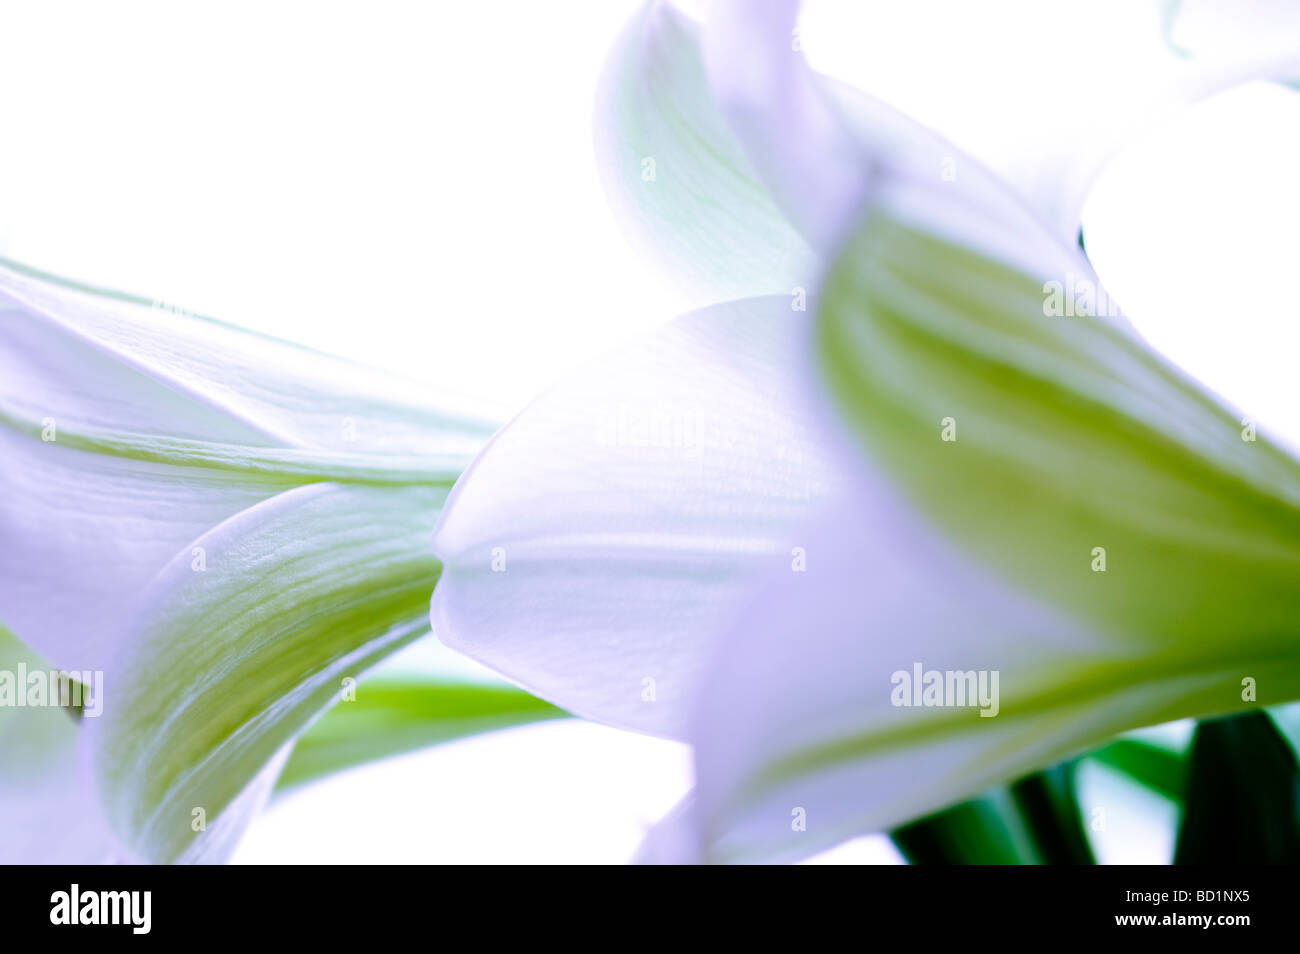 Abstrakte Blumen Ostern Lilly aufgeteilt getönten bunt bunt Stockfoto